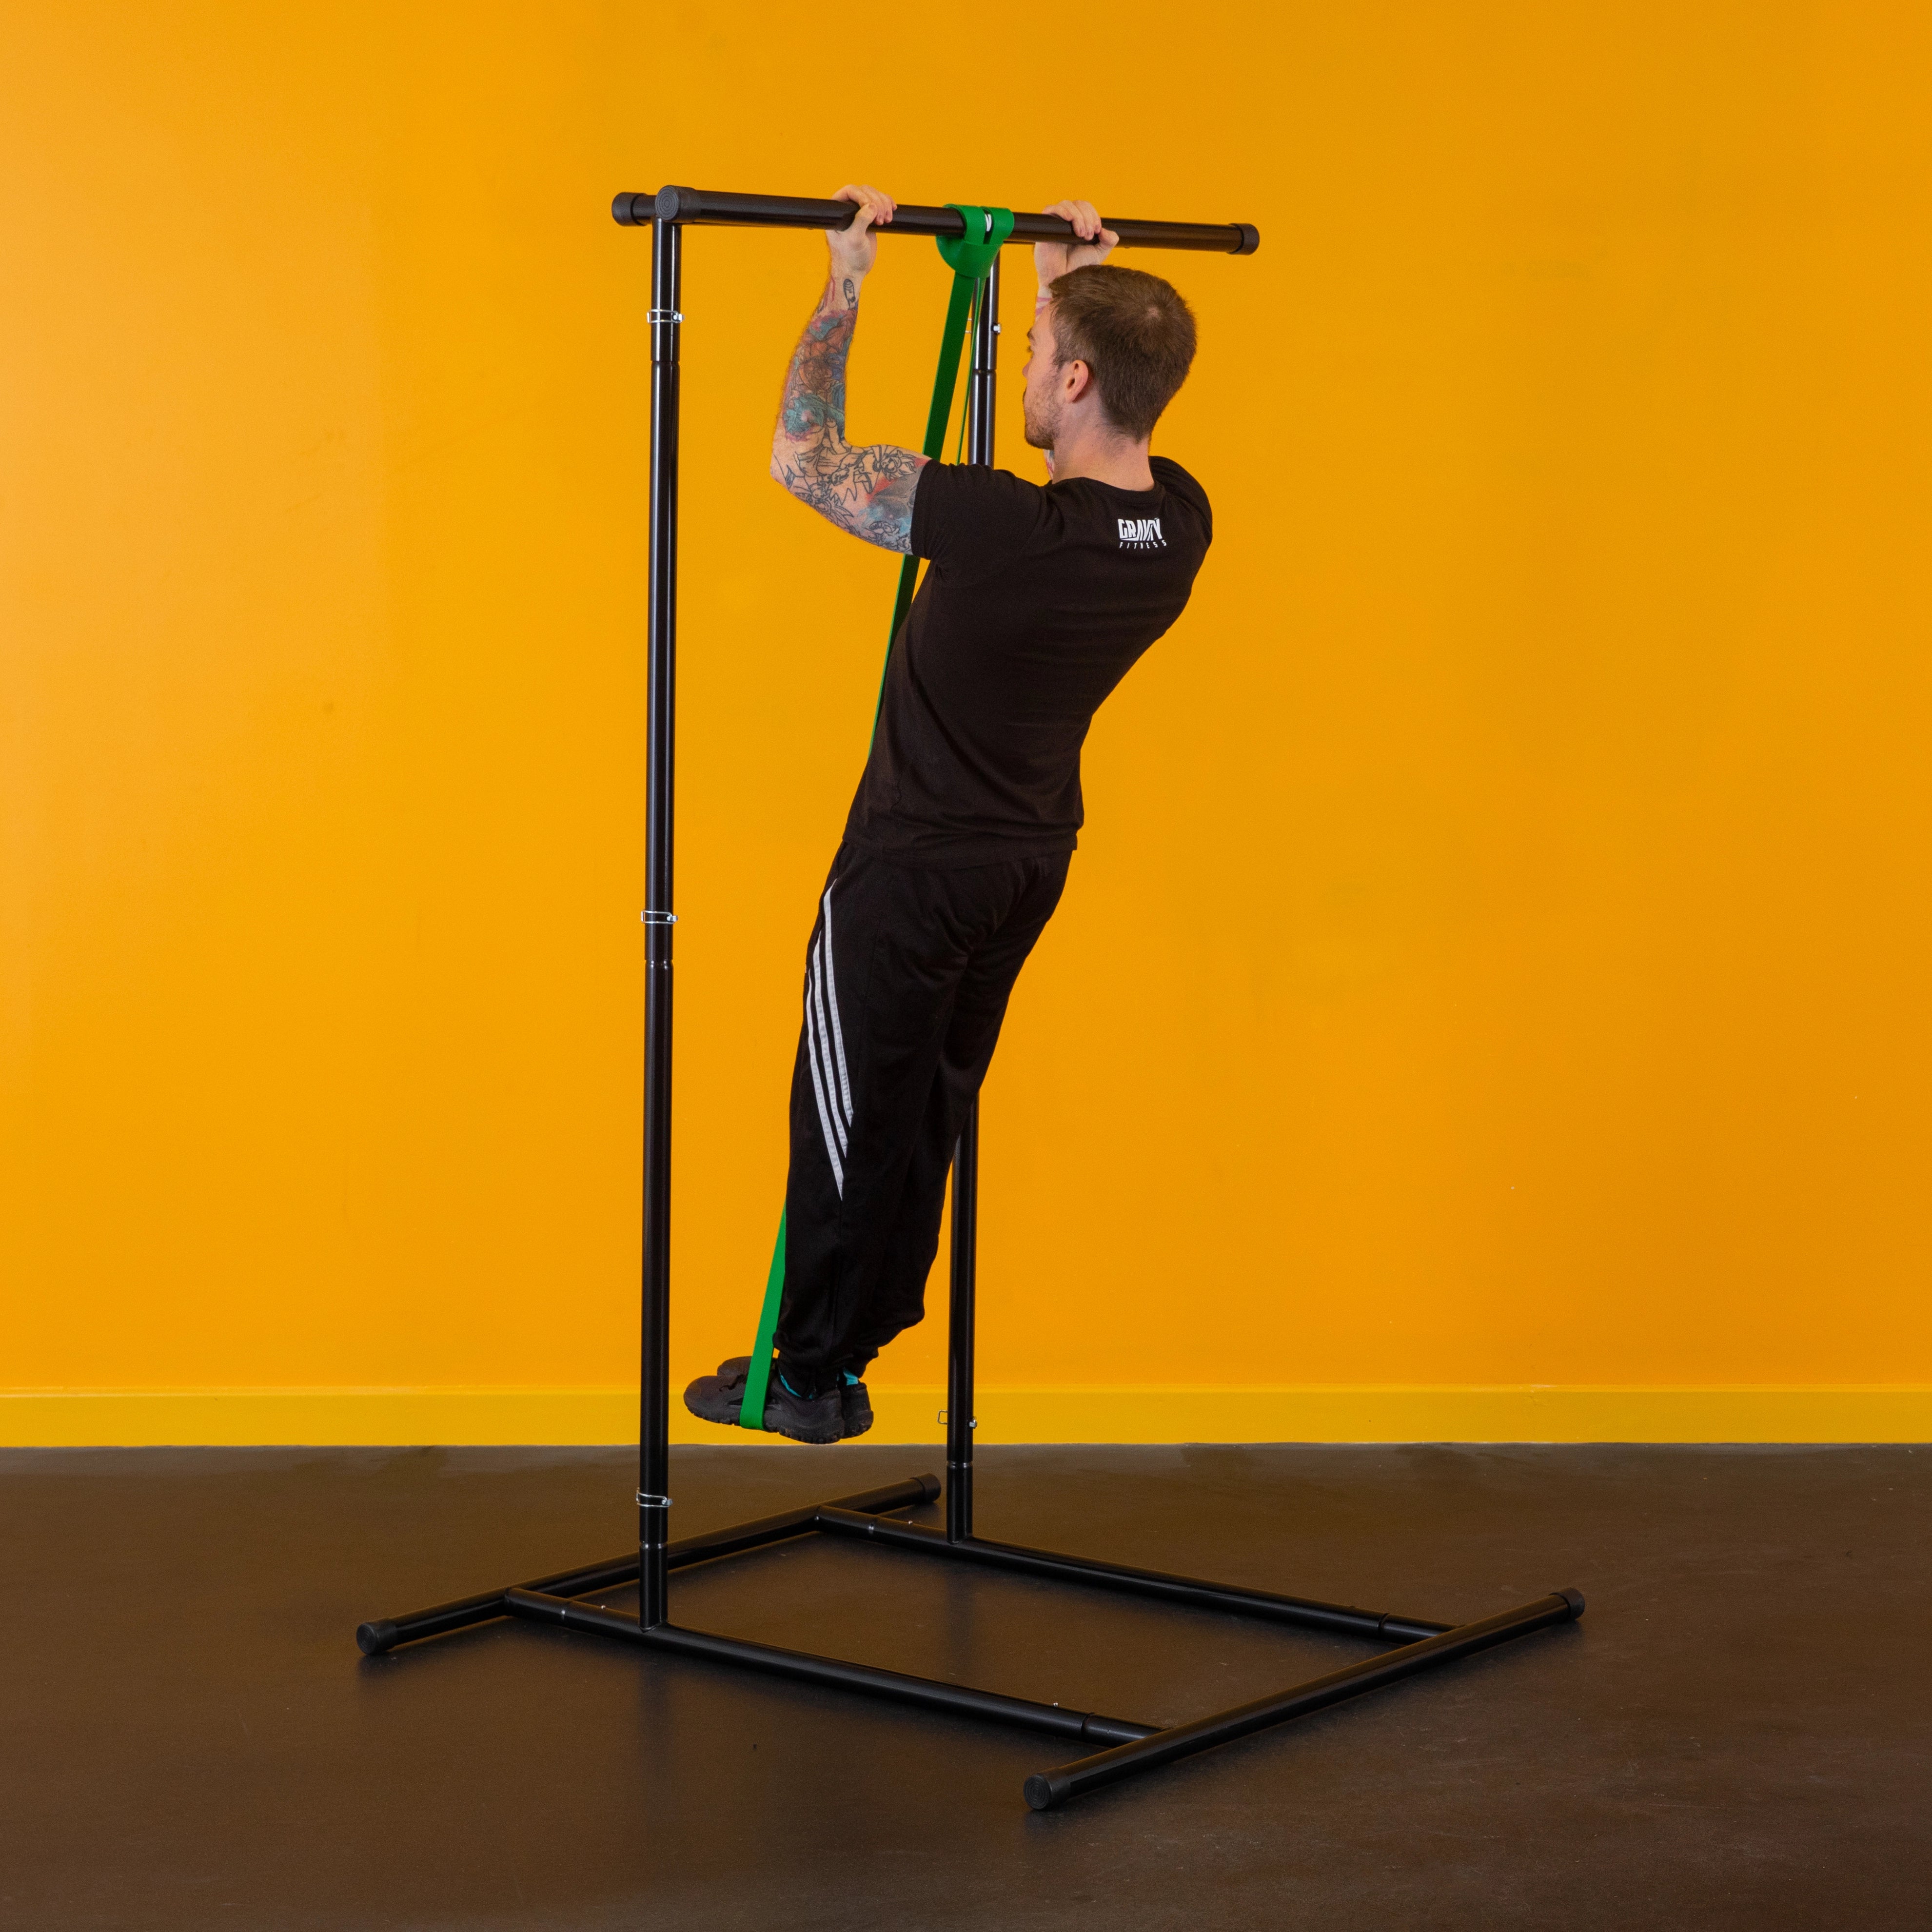 Gravity Fitness Advanced 4 in 1 Heavy Duty Workout/Dip Belt